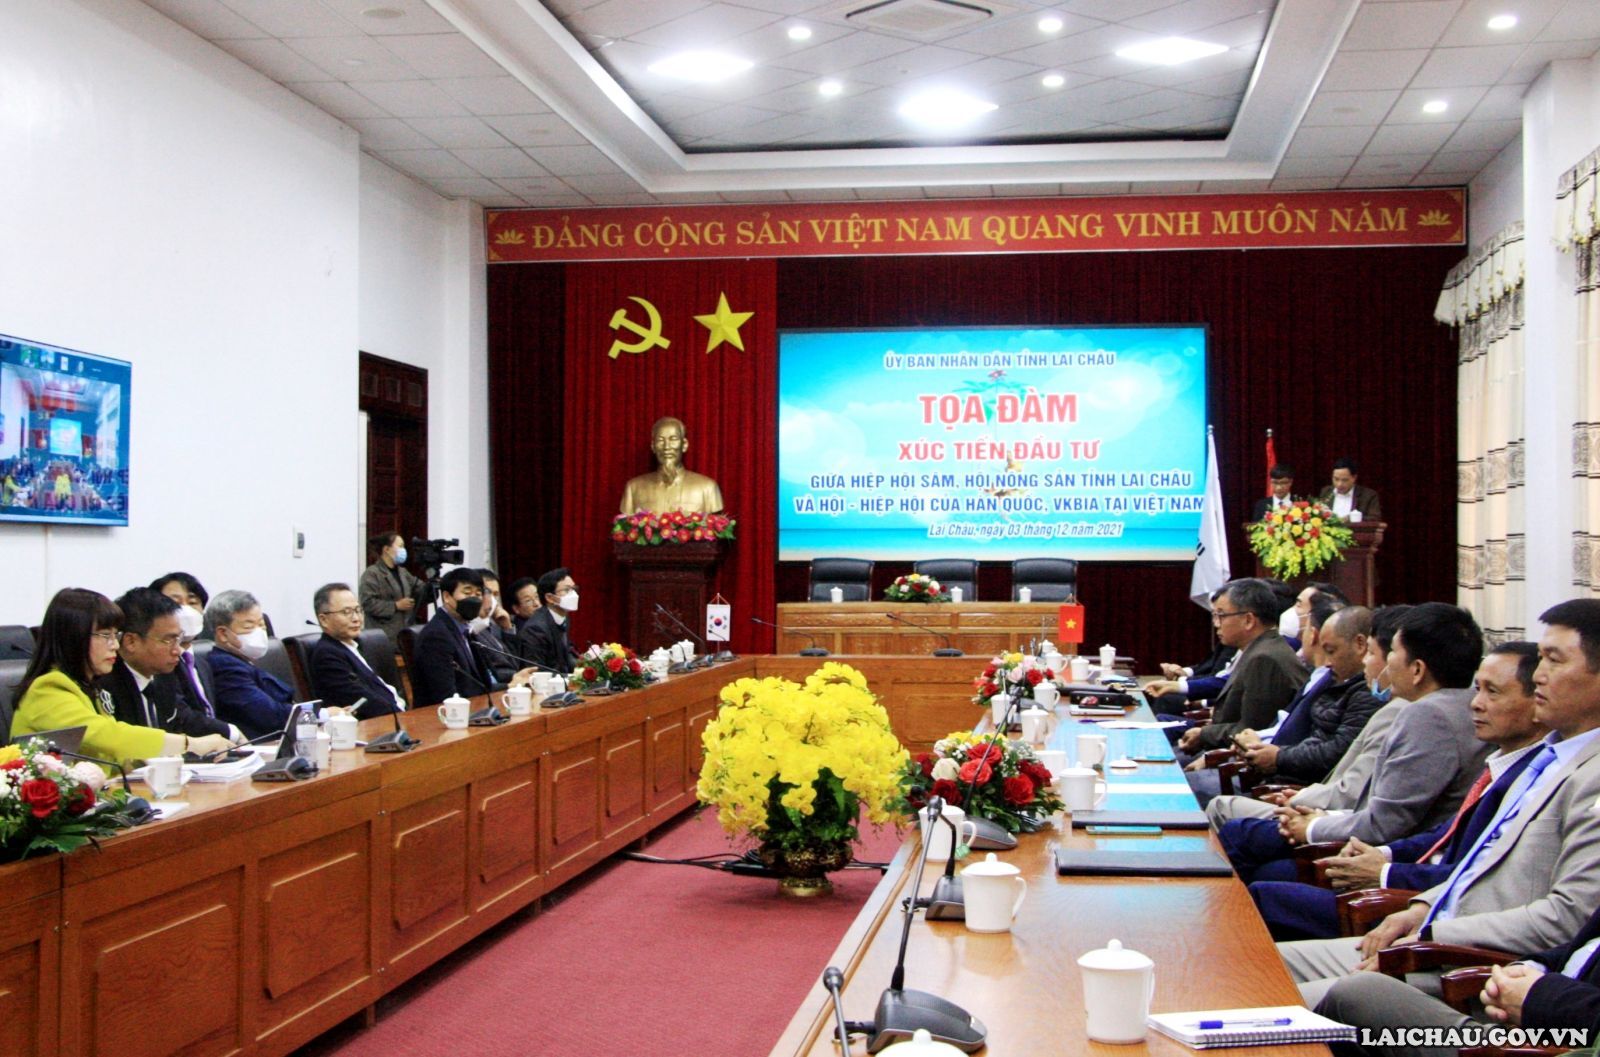 Tọa đàm xúc tiến đầu tư giữa Hiệp hội Sâm, Hội nông sản tỉnh Lai Châu và Hội – Hiệp hội của Hàn Quốc, VKBIA tại Việt Nam